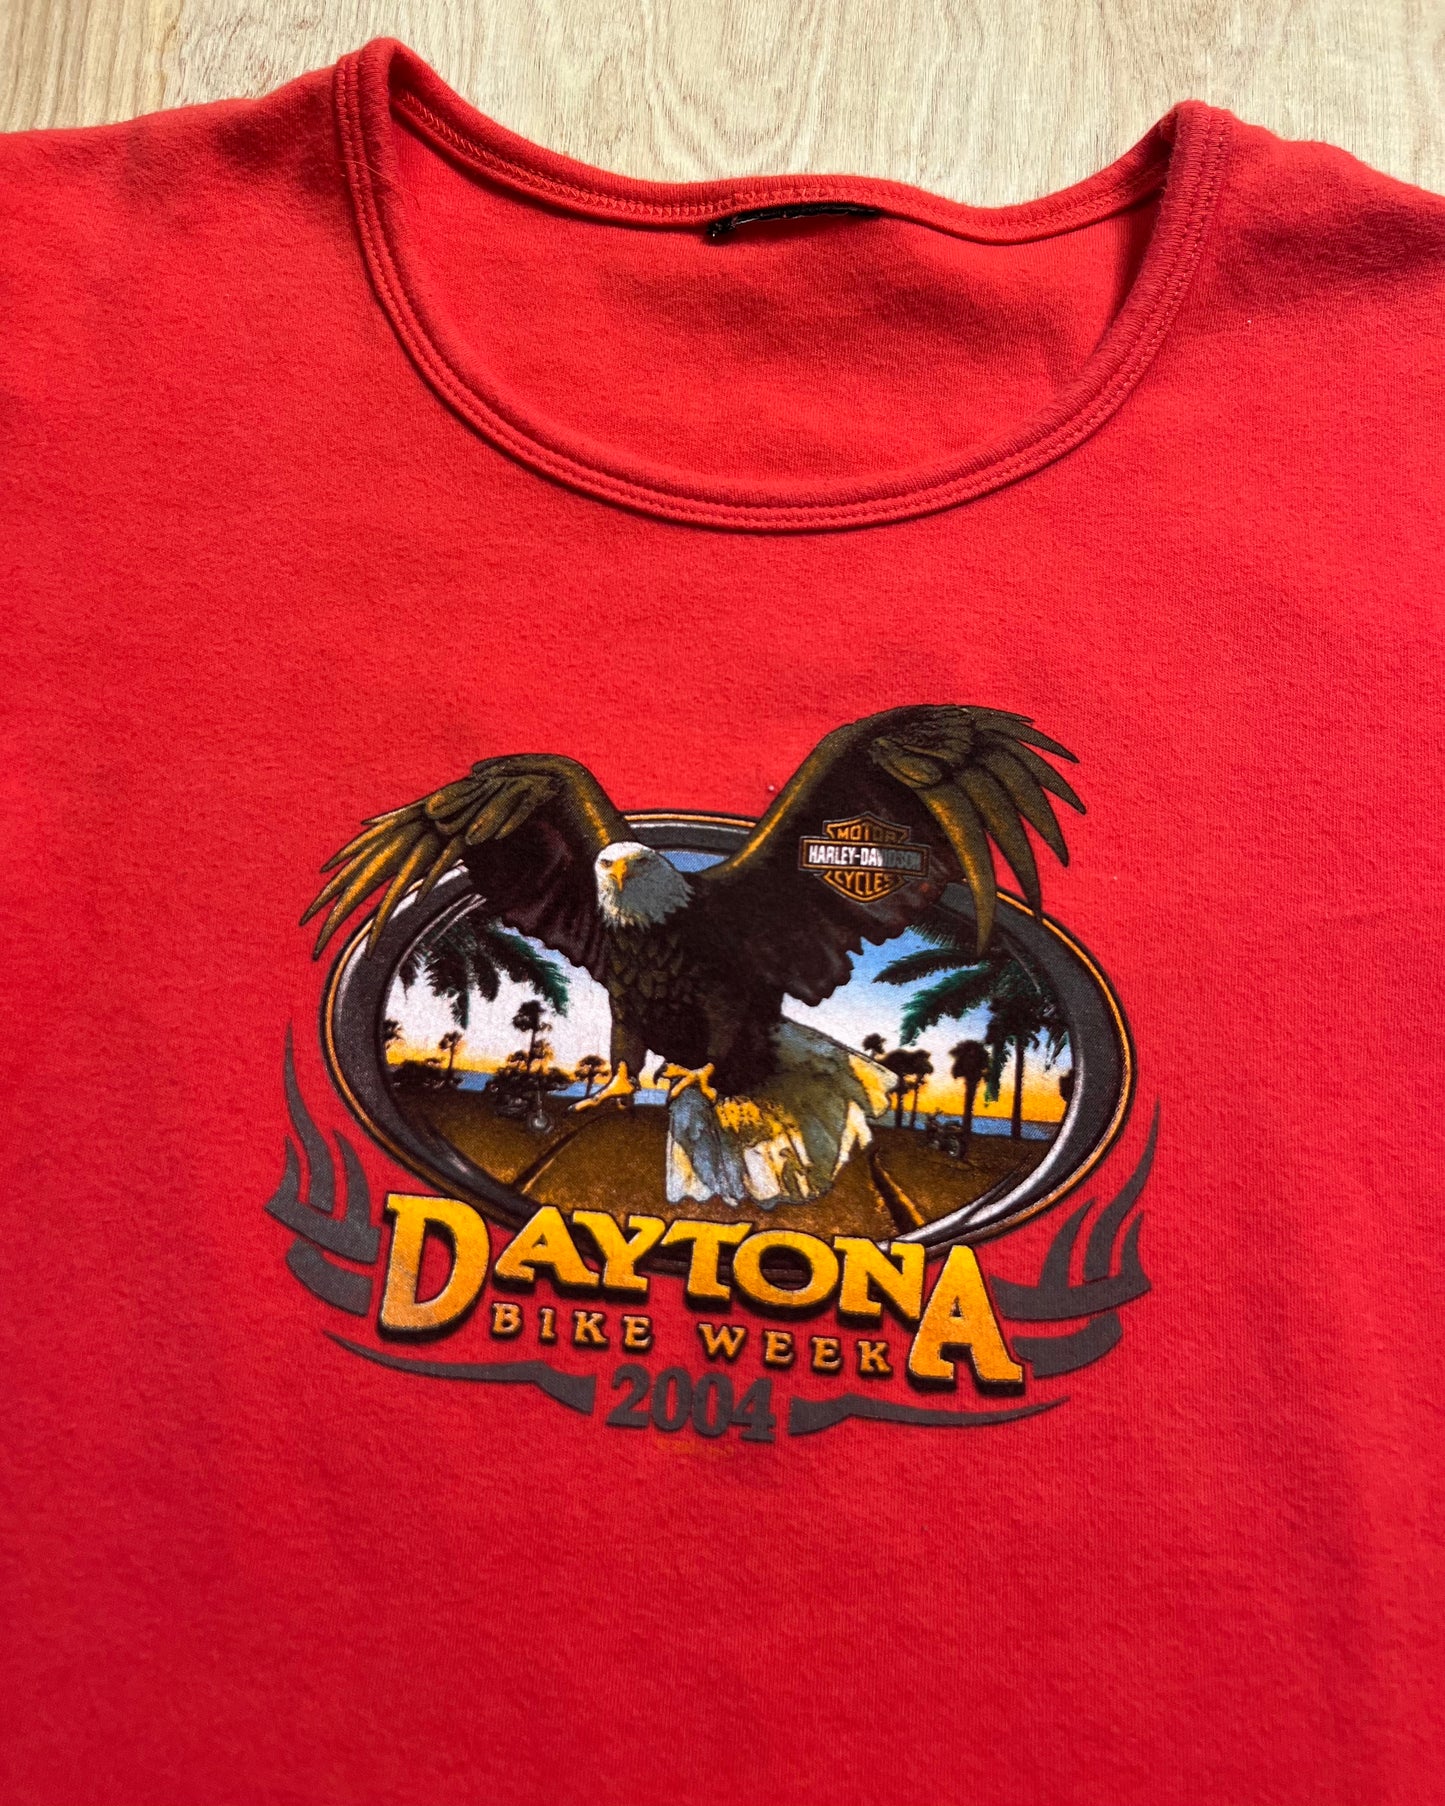 2004 Harley Davidson Daytona Bike Week T-Shirt